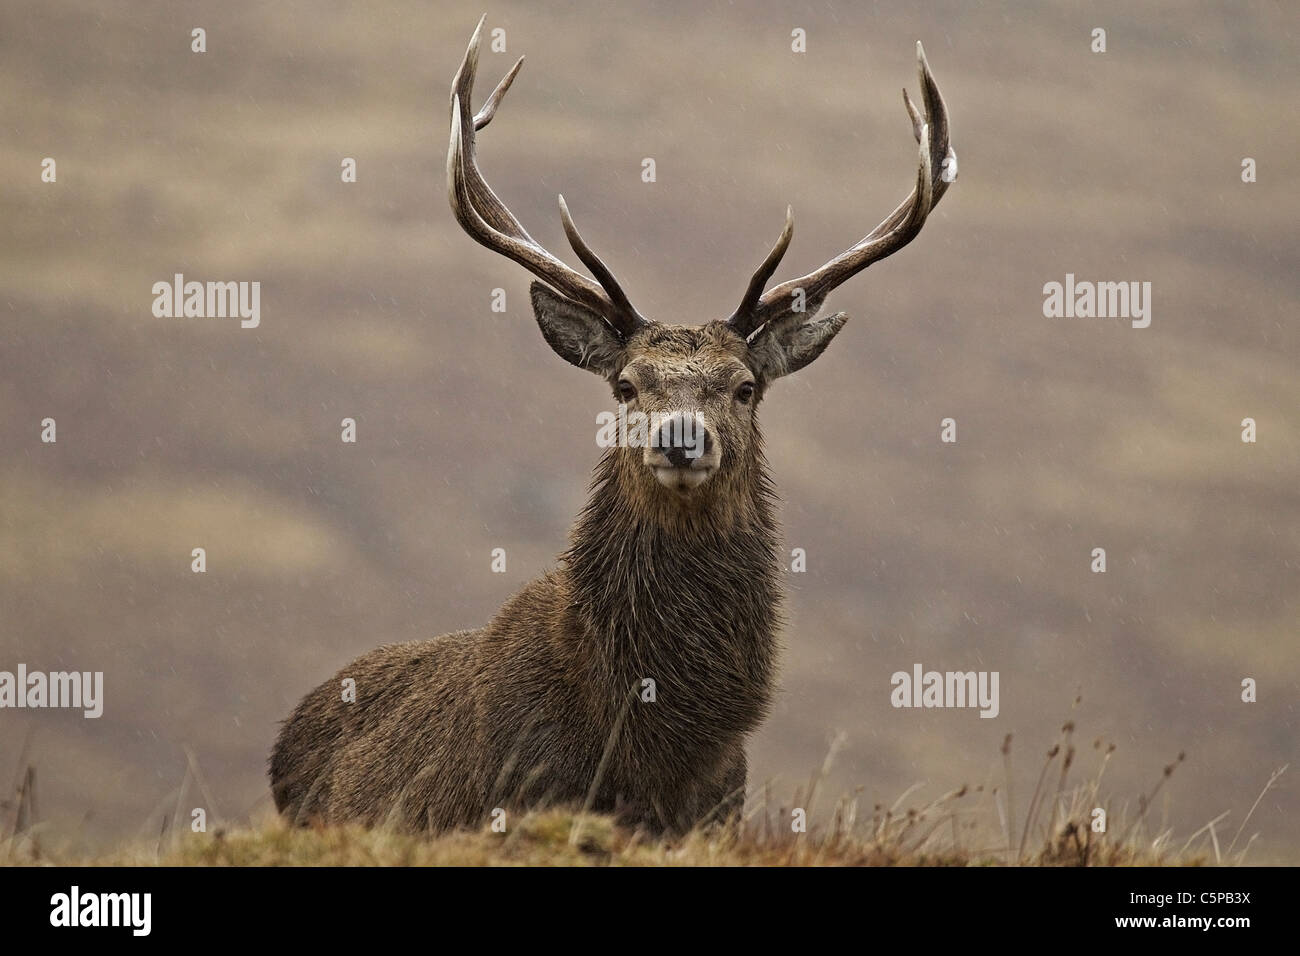 Red Deer stag, Cervus elaphus, standing in Scottish landscape, Cairngorms National Park, Scotland, UK Stock Photo